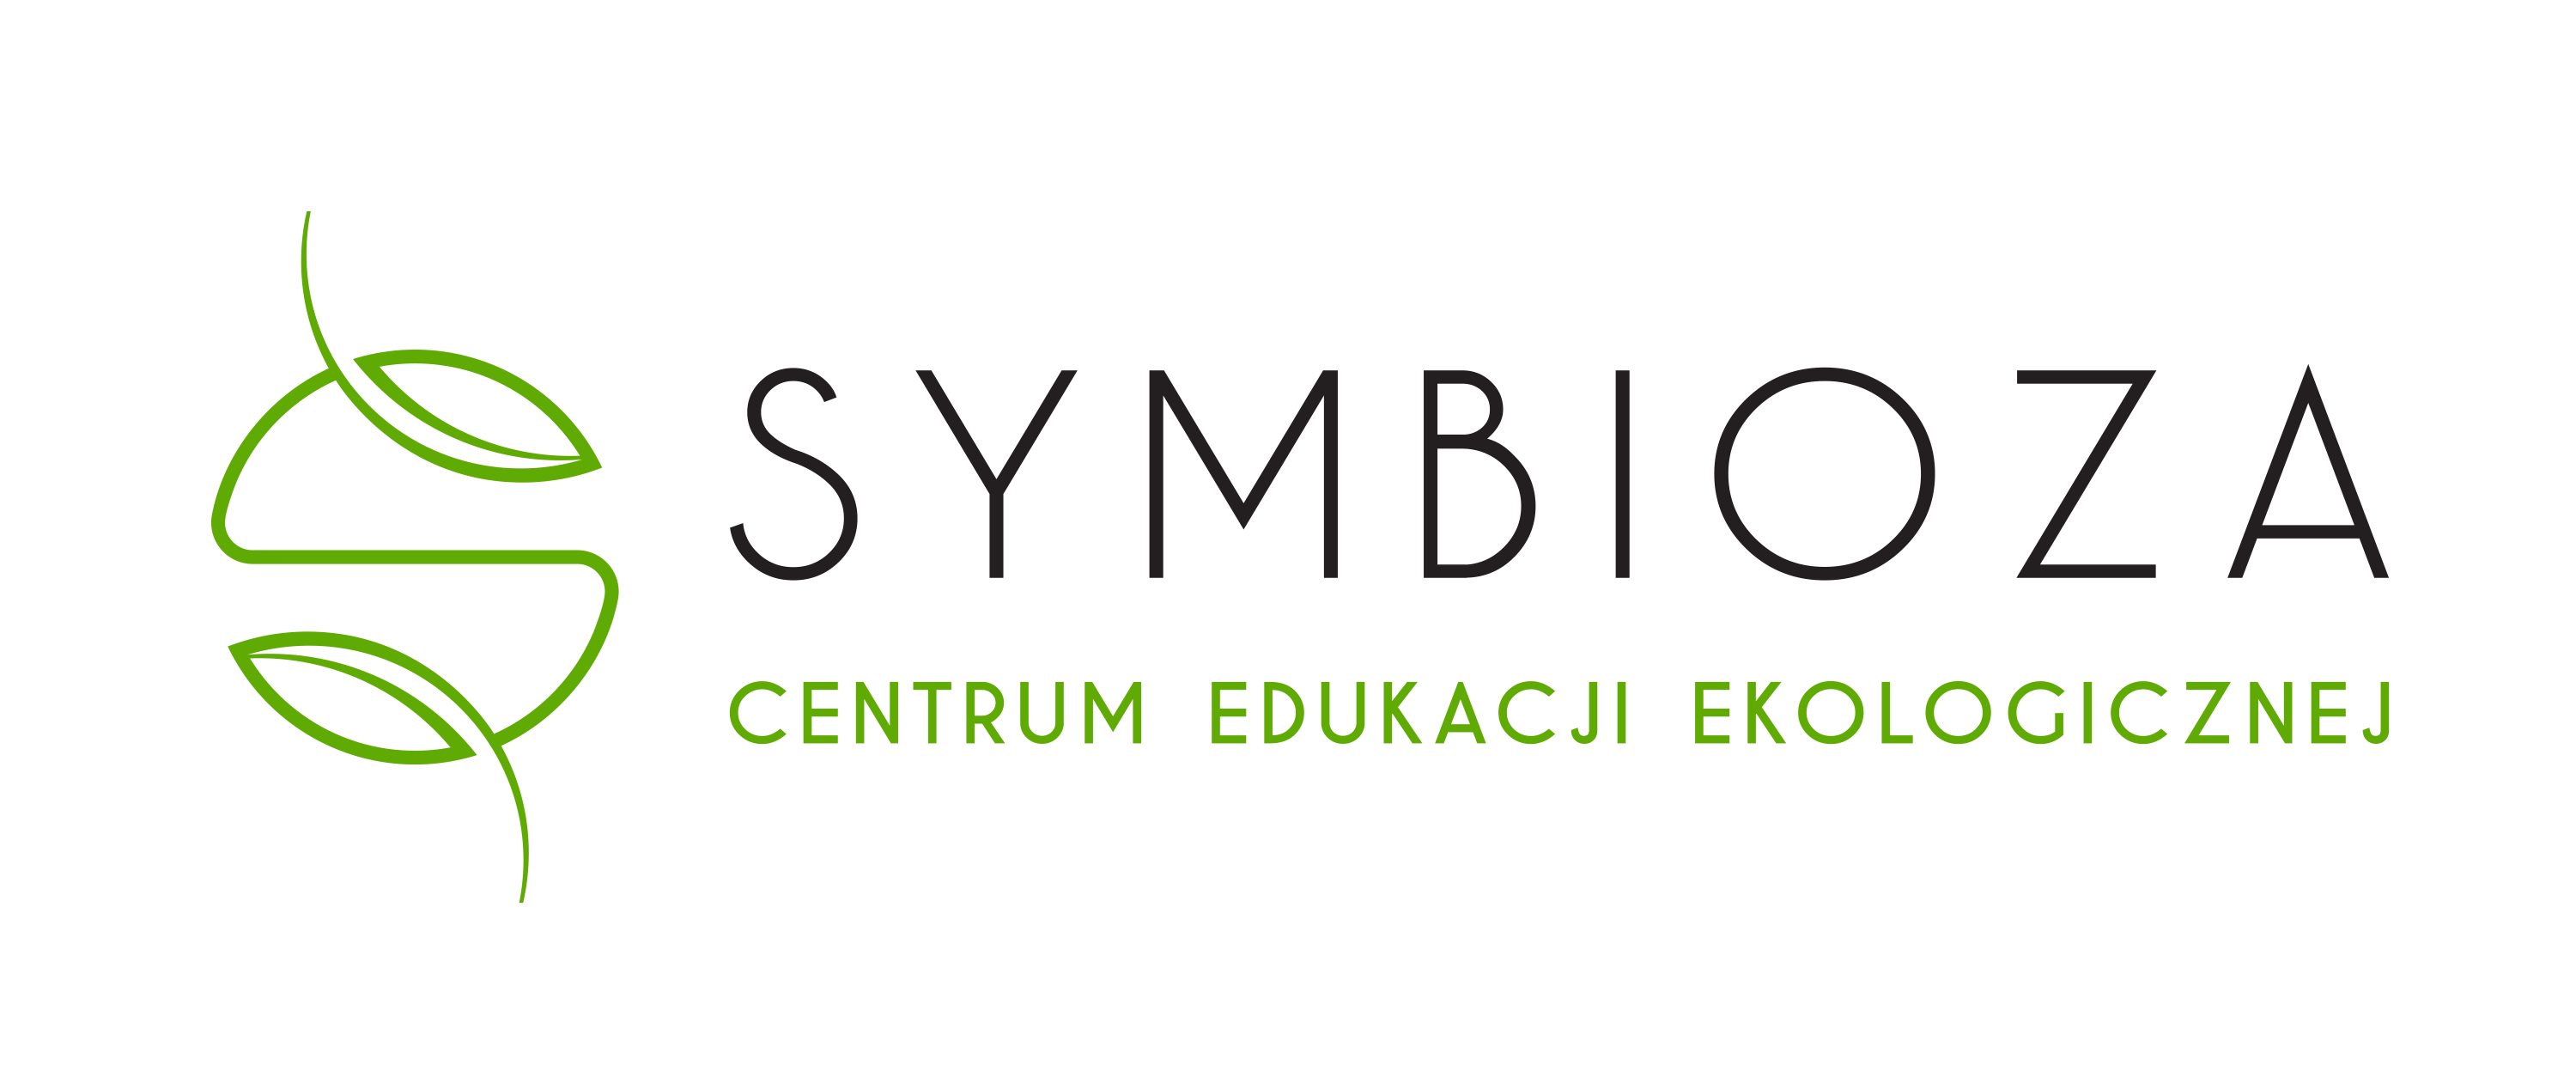 Centrum Edukacji Ekologicznej „Symbioza" w Krakowie